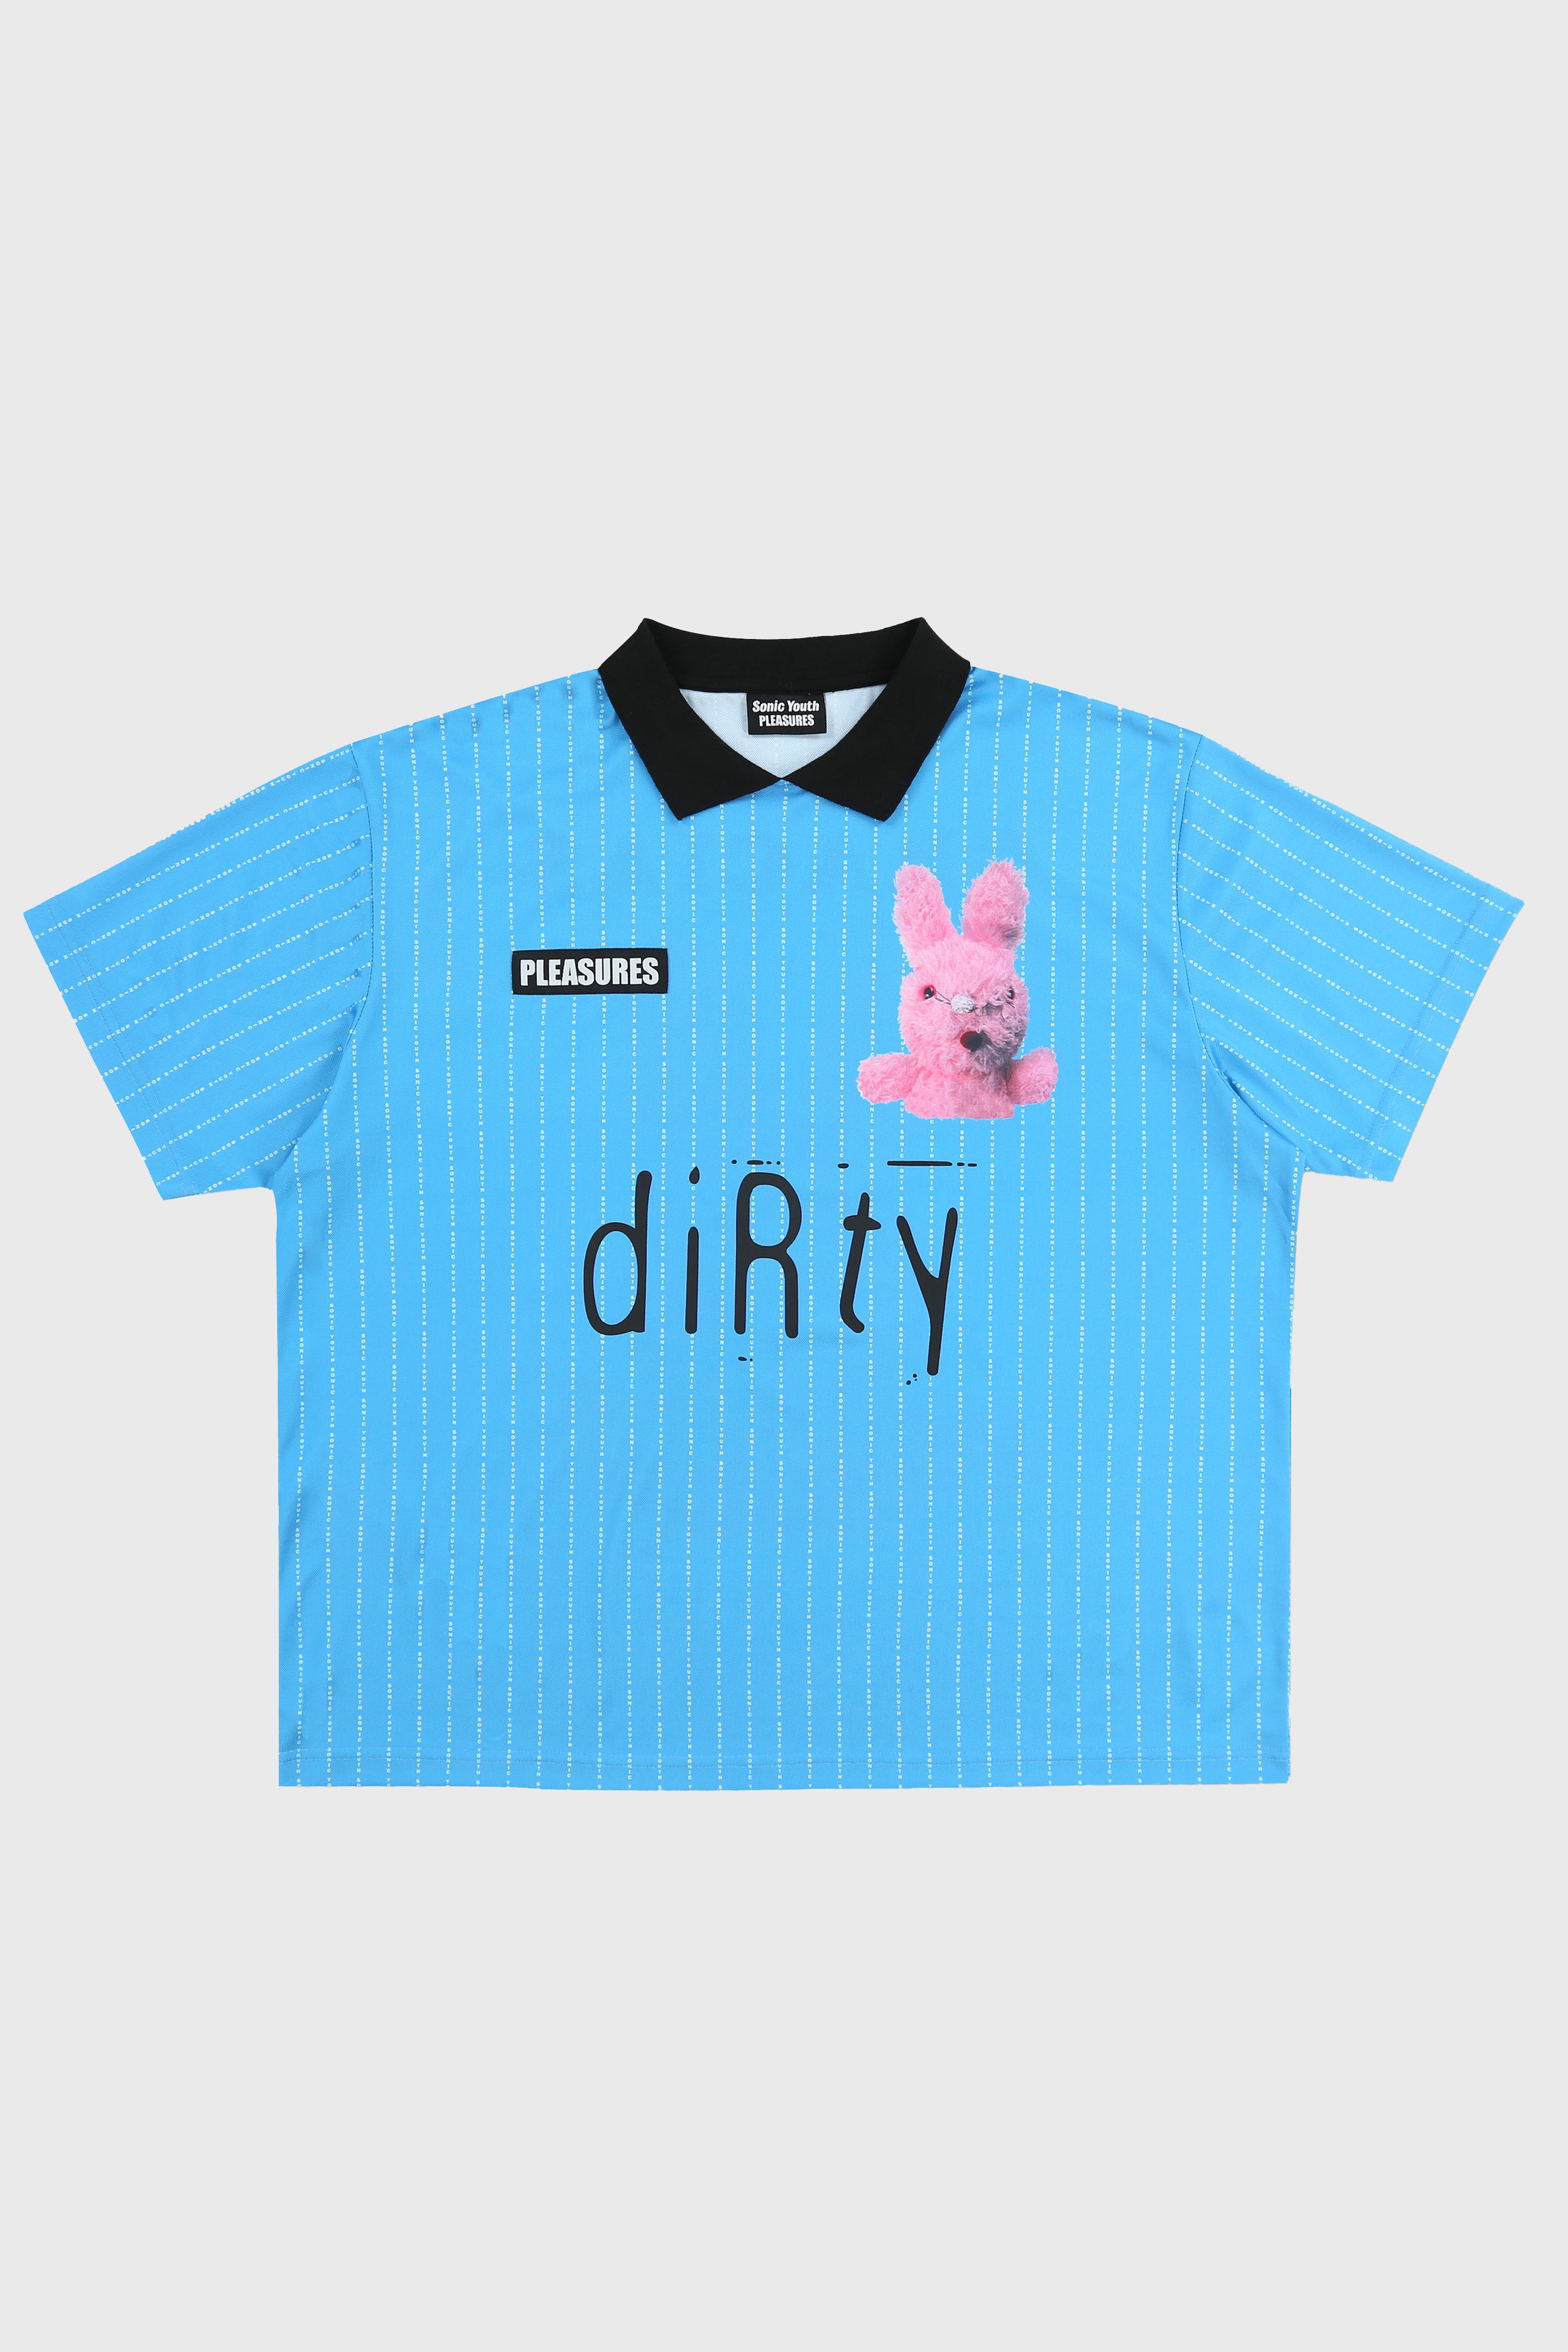 Selectshop FRAME - PLEASURES Bunny Soccer Jersey T-Shirts Concept Store Dubai